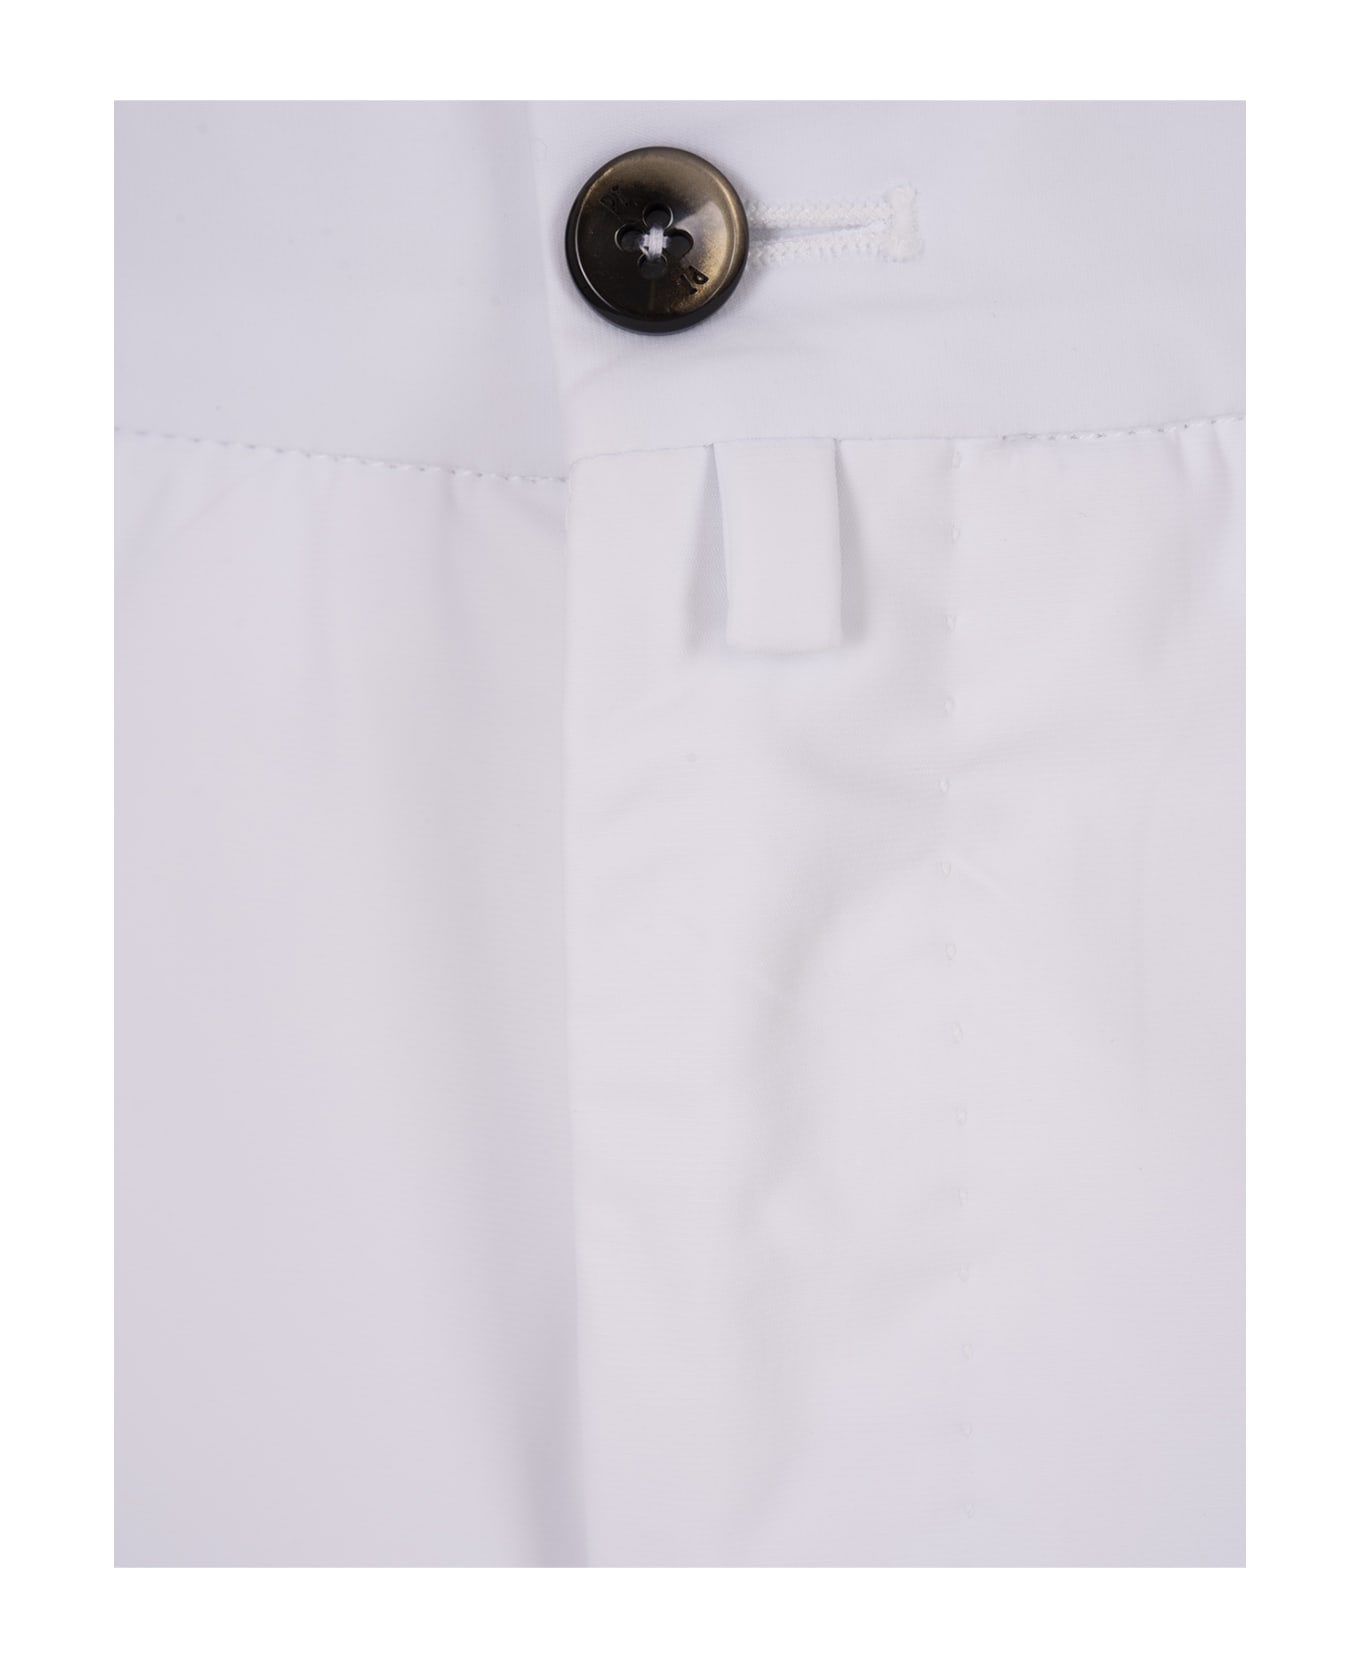 PT Torino White Stretch Cotton Shorts - White